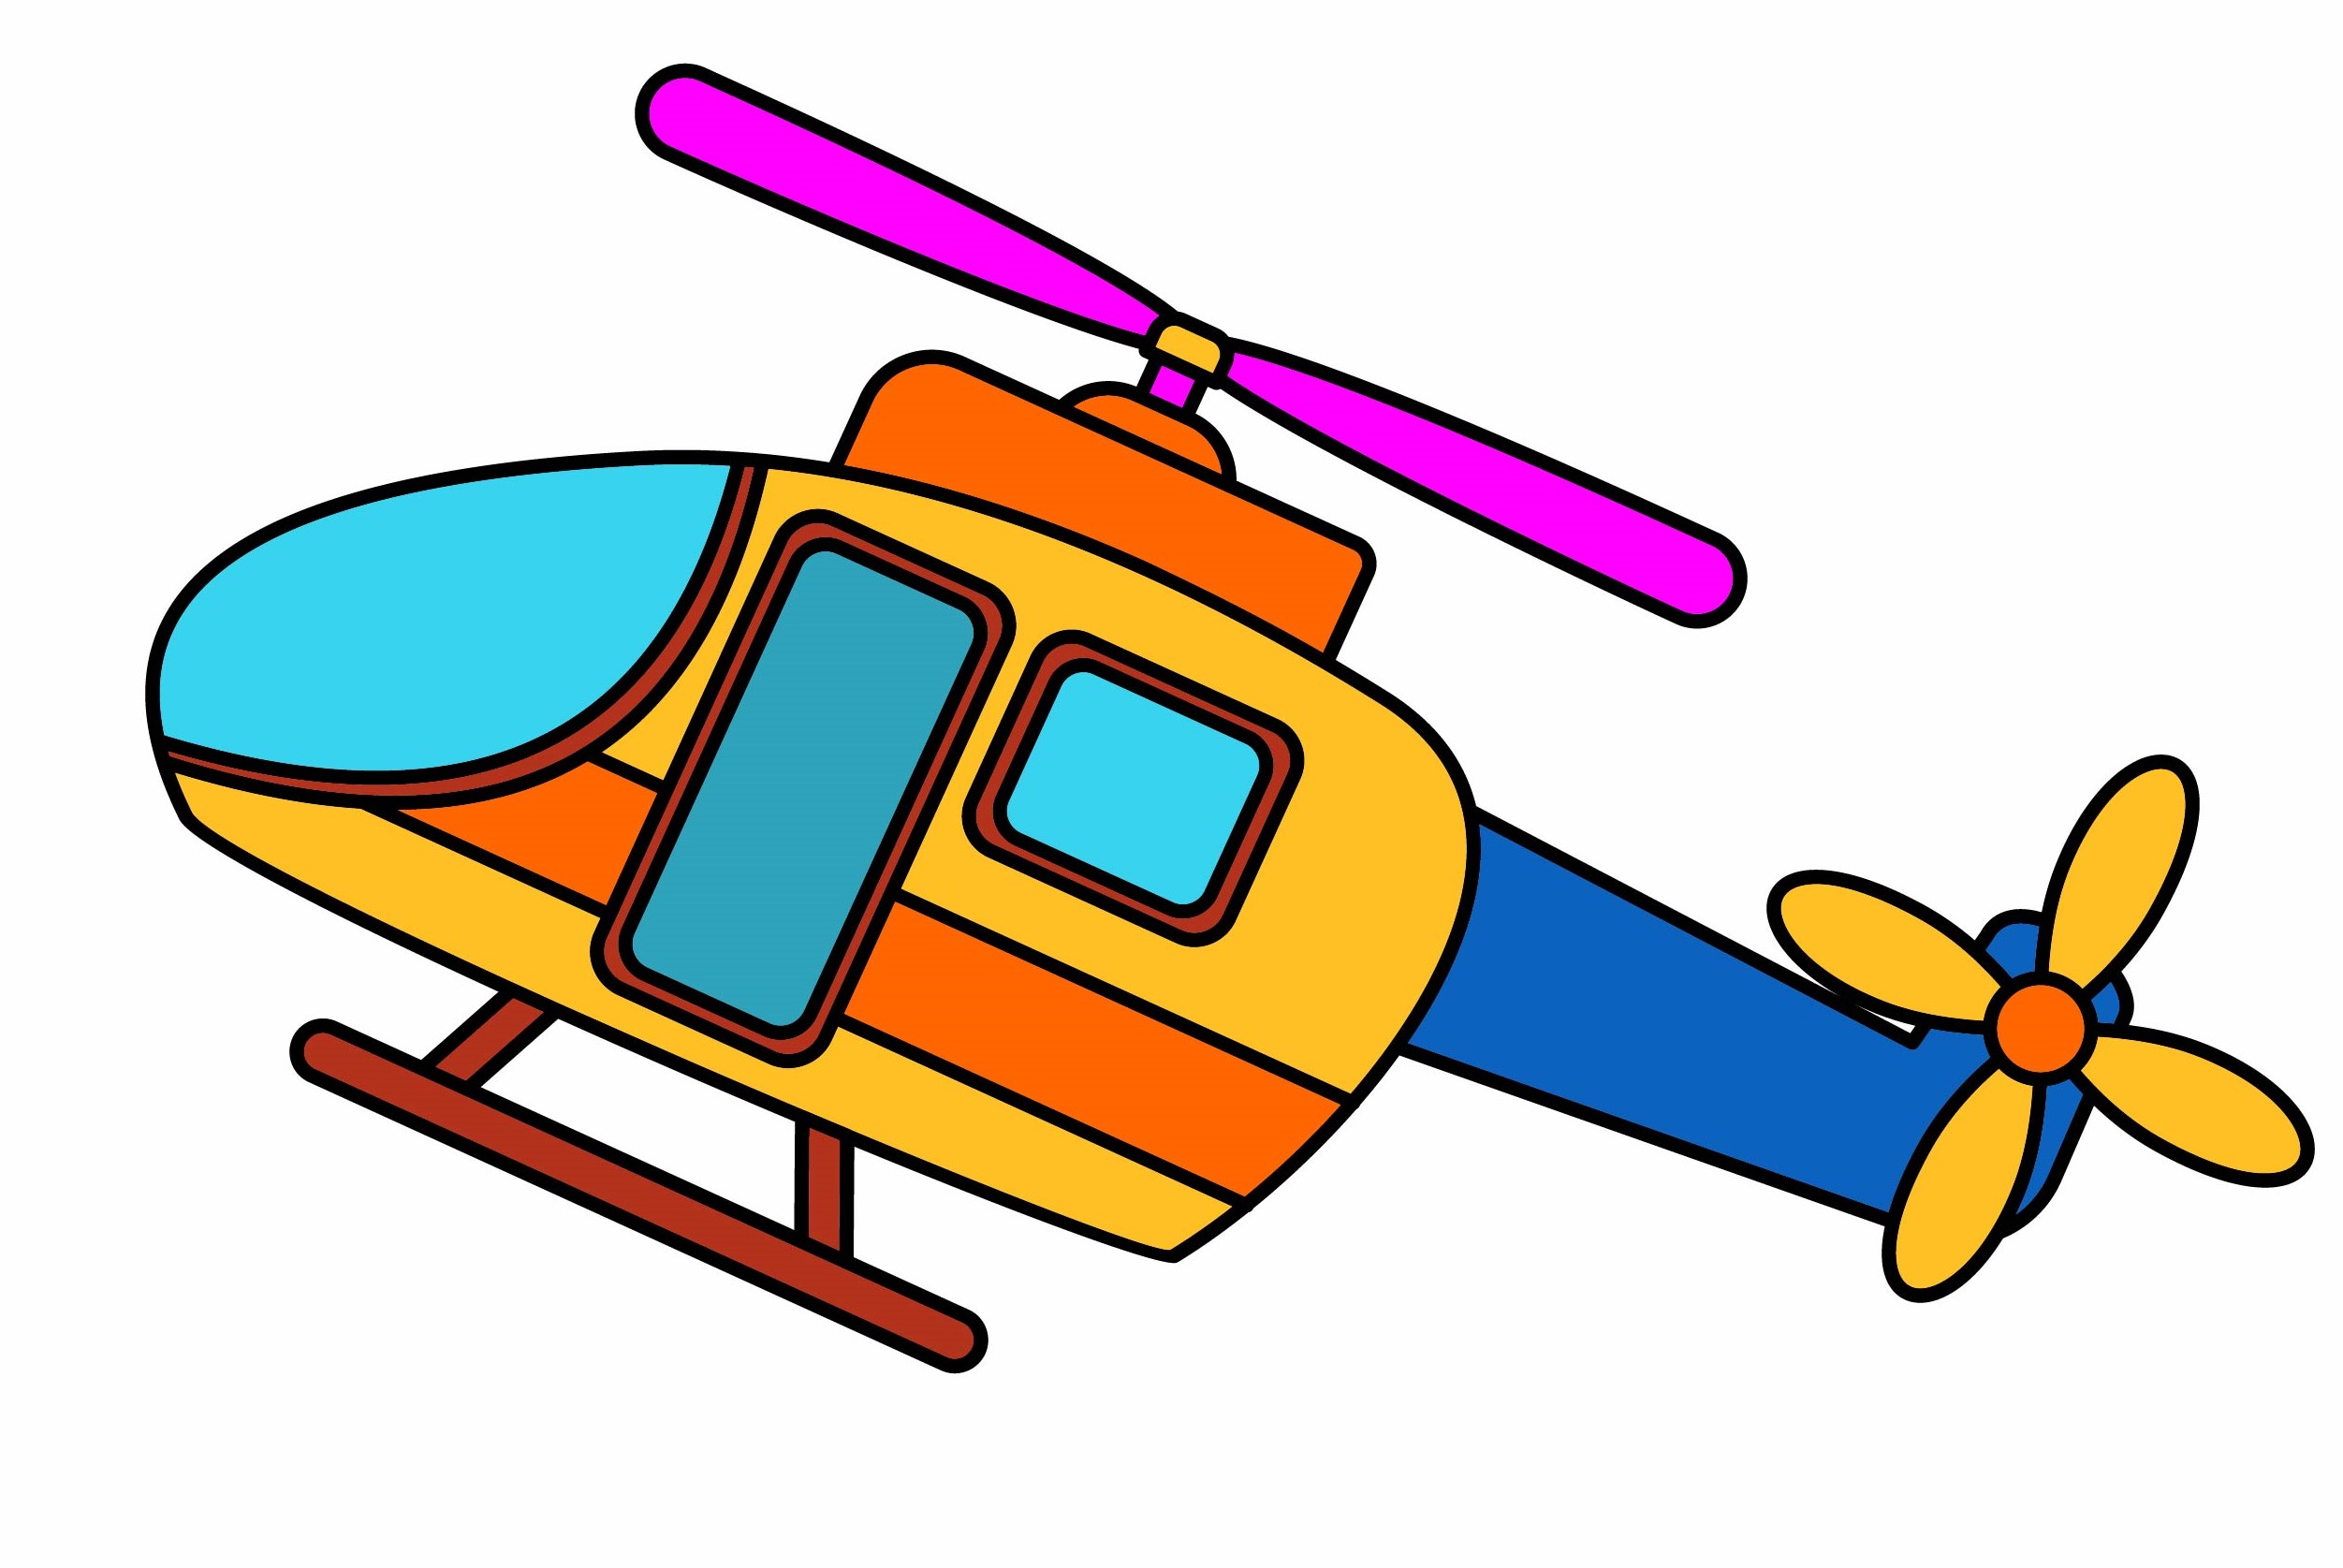 Раскраска вертолет «Маленький авиалайнер» формата А4 в высоком качестве